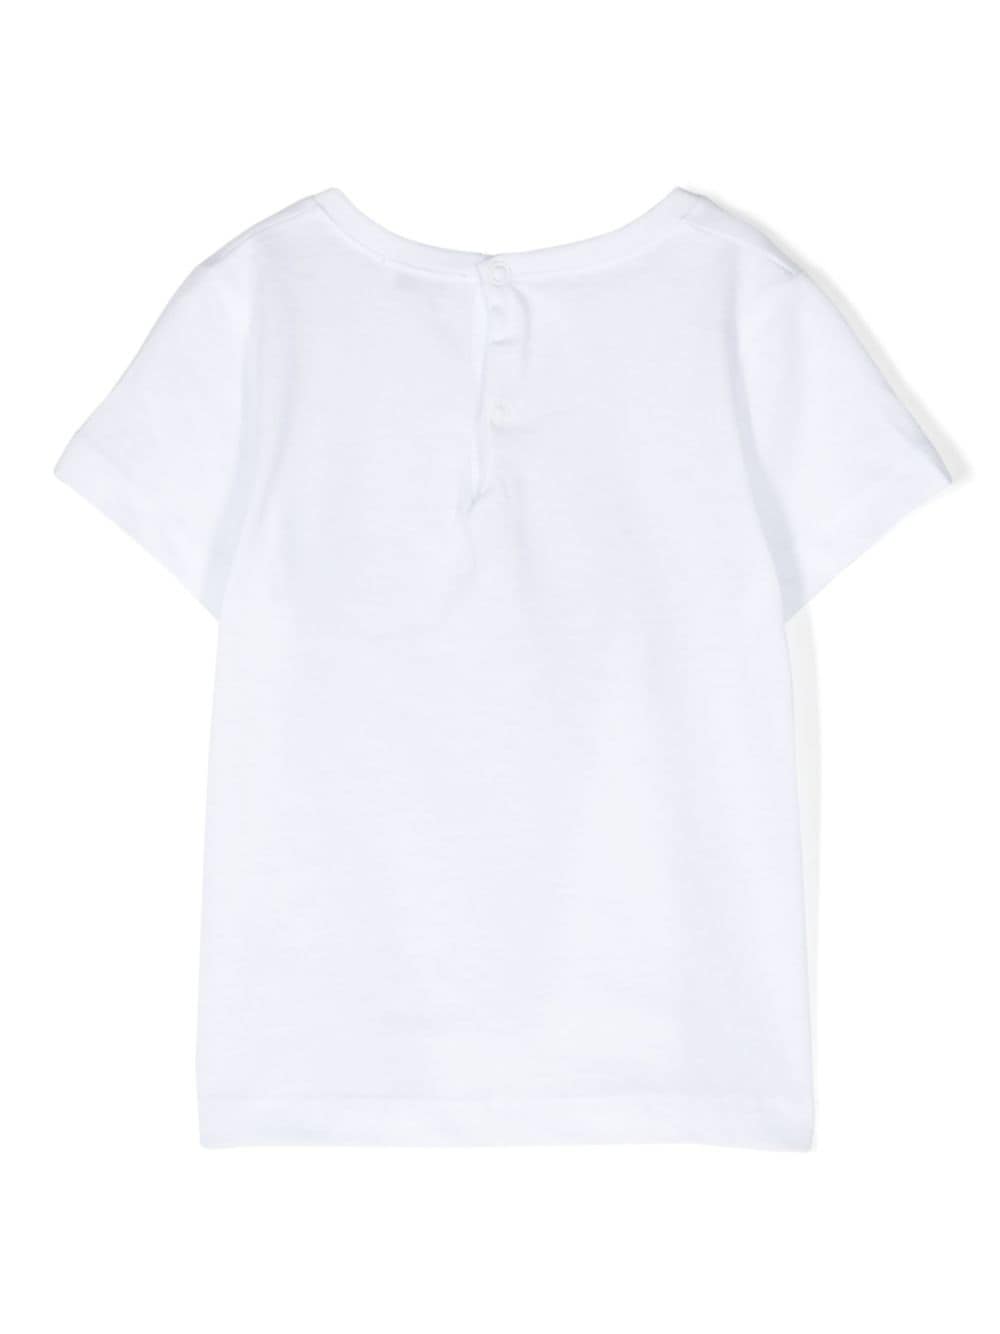 T-shirt bianca per neonata con stampa grafica